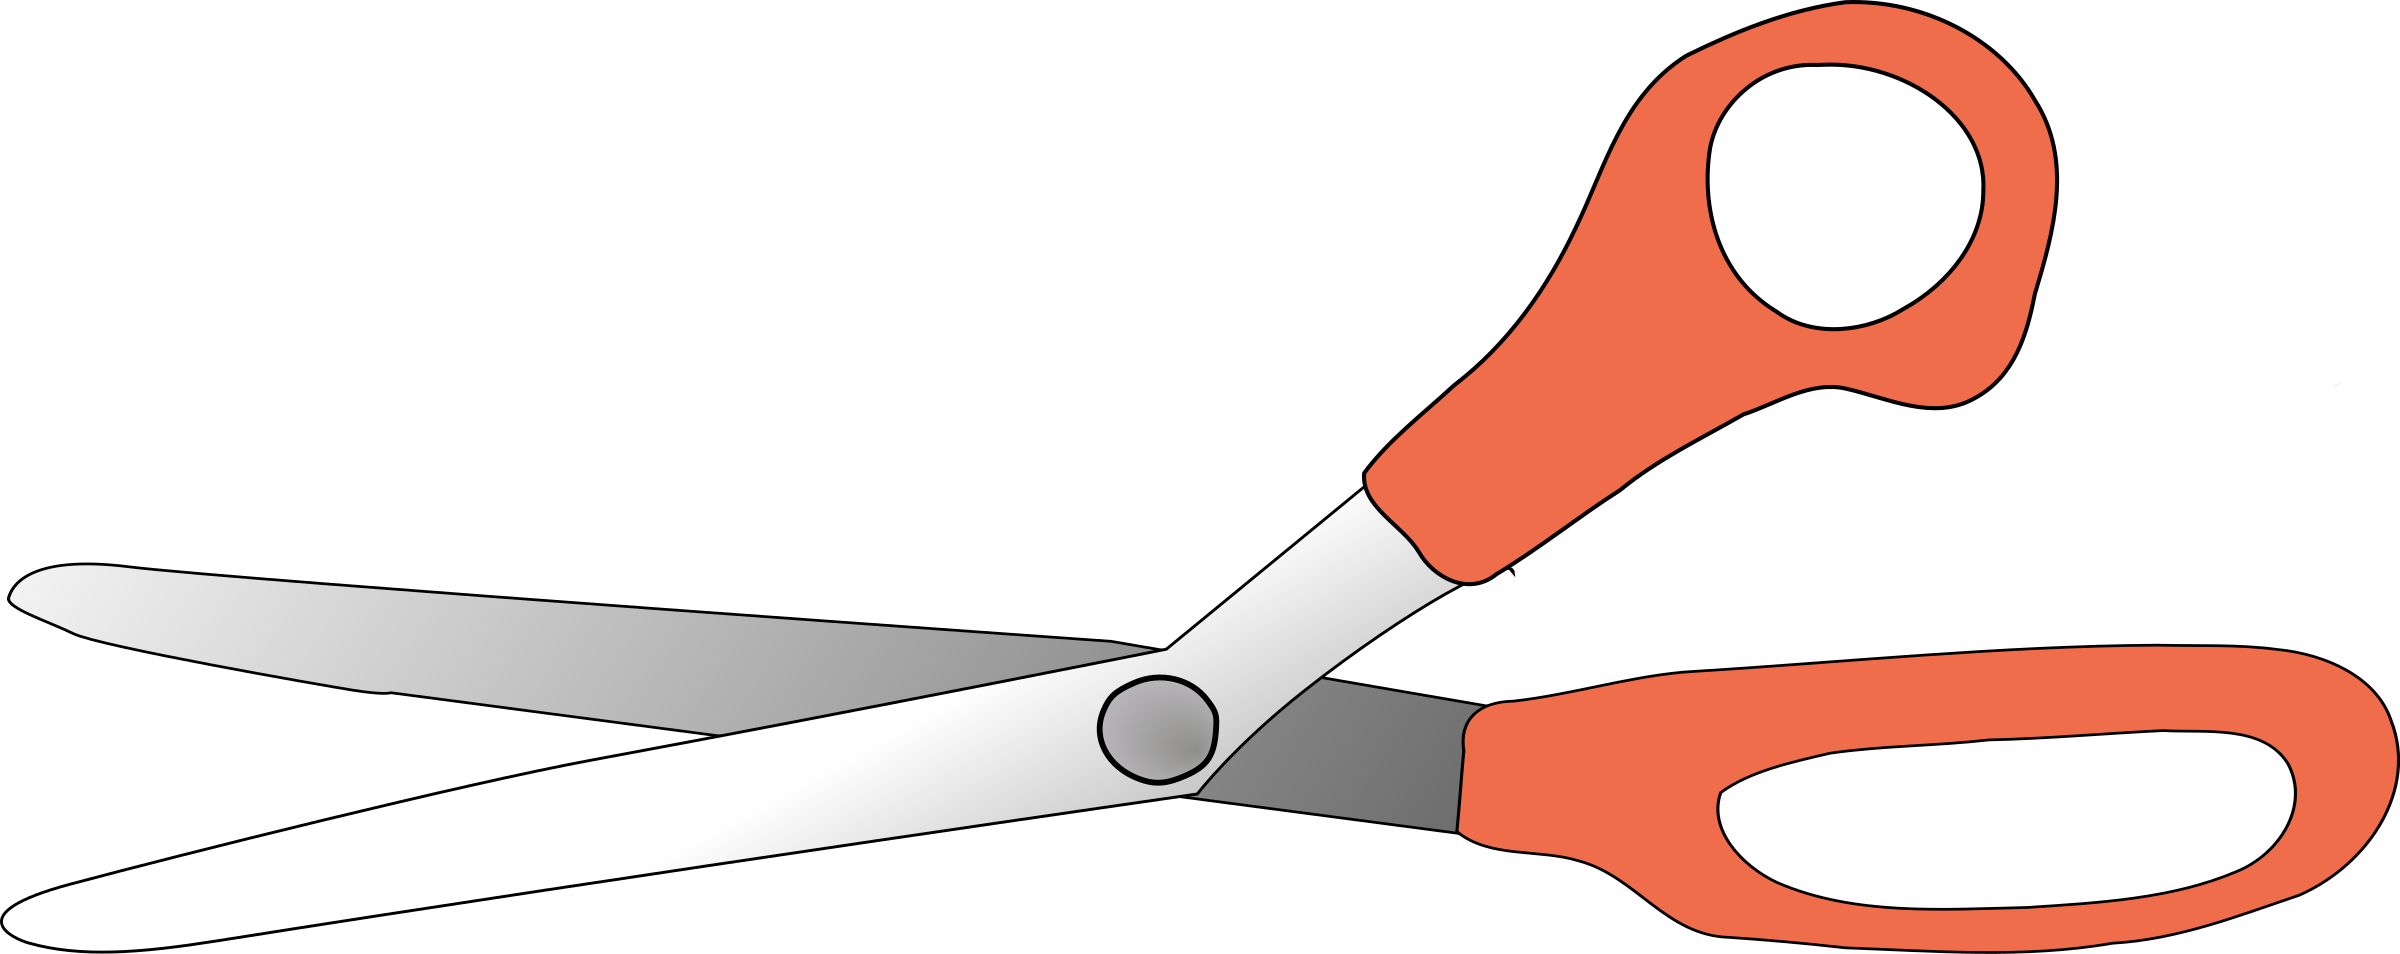 Big Image - Scissors Clip Art (2400x954)